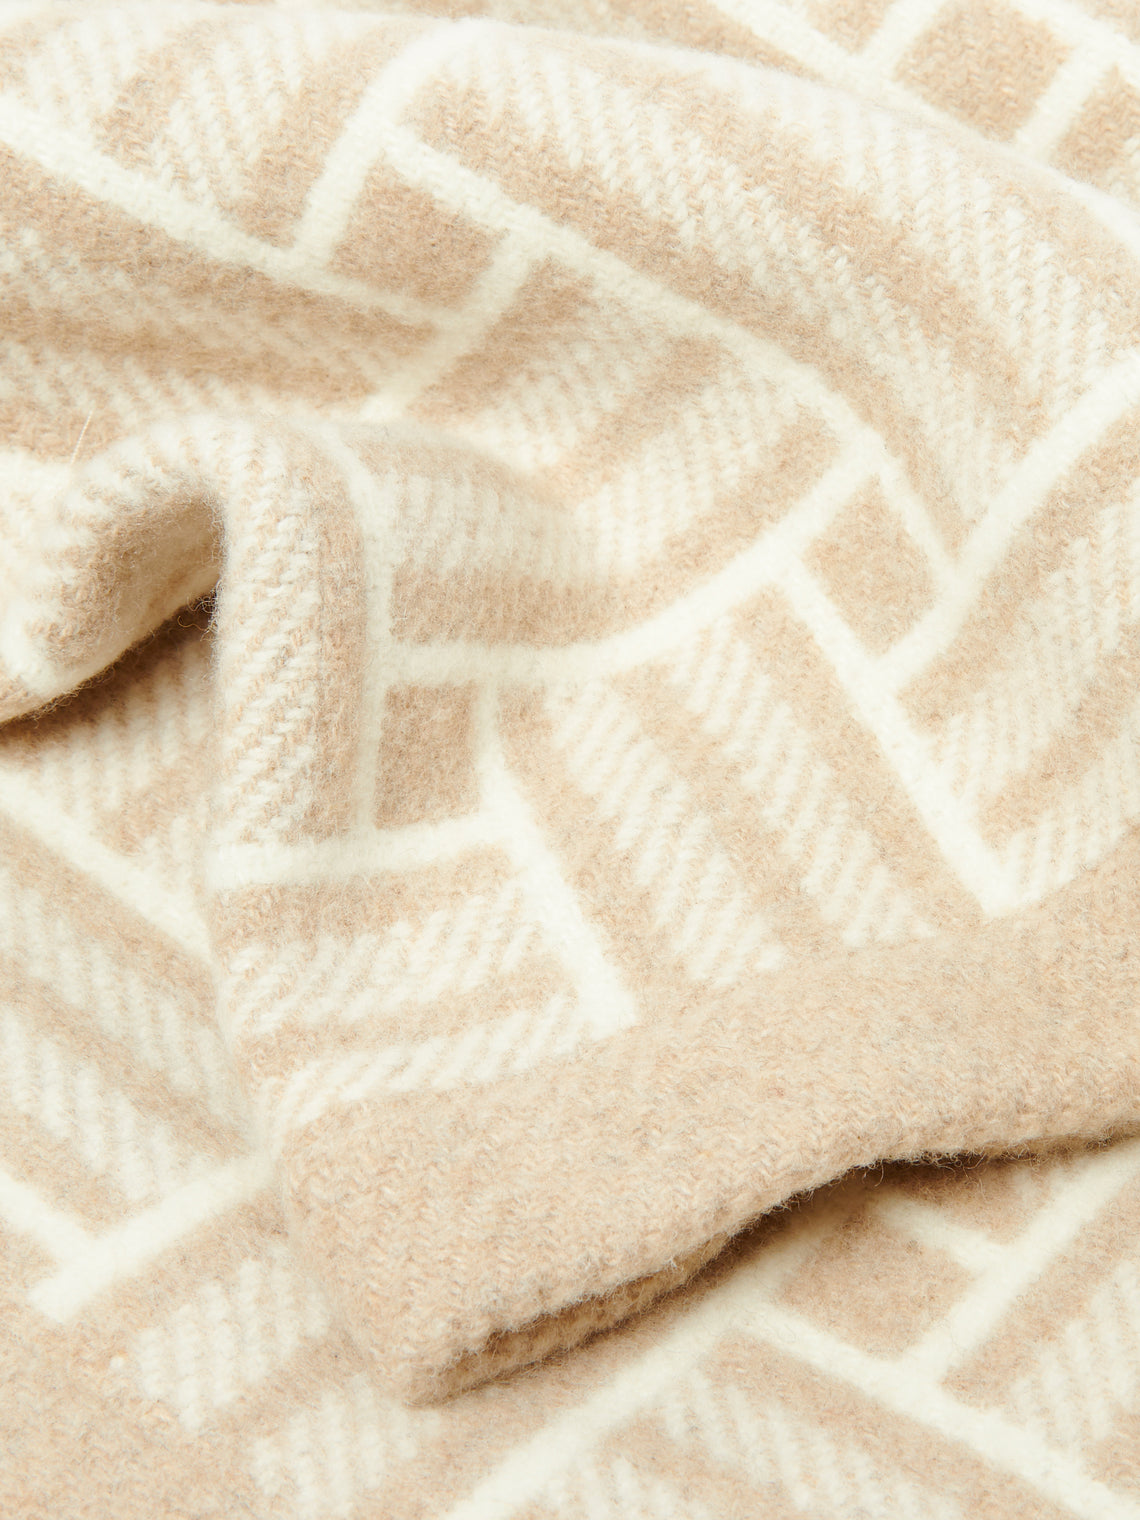 Johnstons of Elgin - Basket Weave Wool Blanket - Beige - ABASK